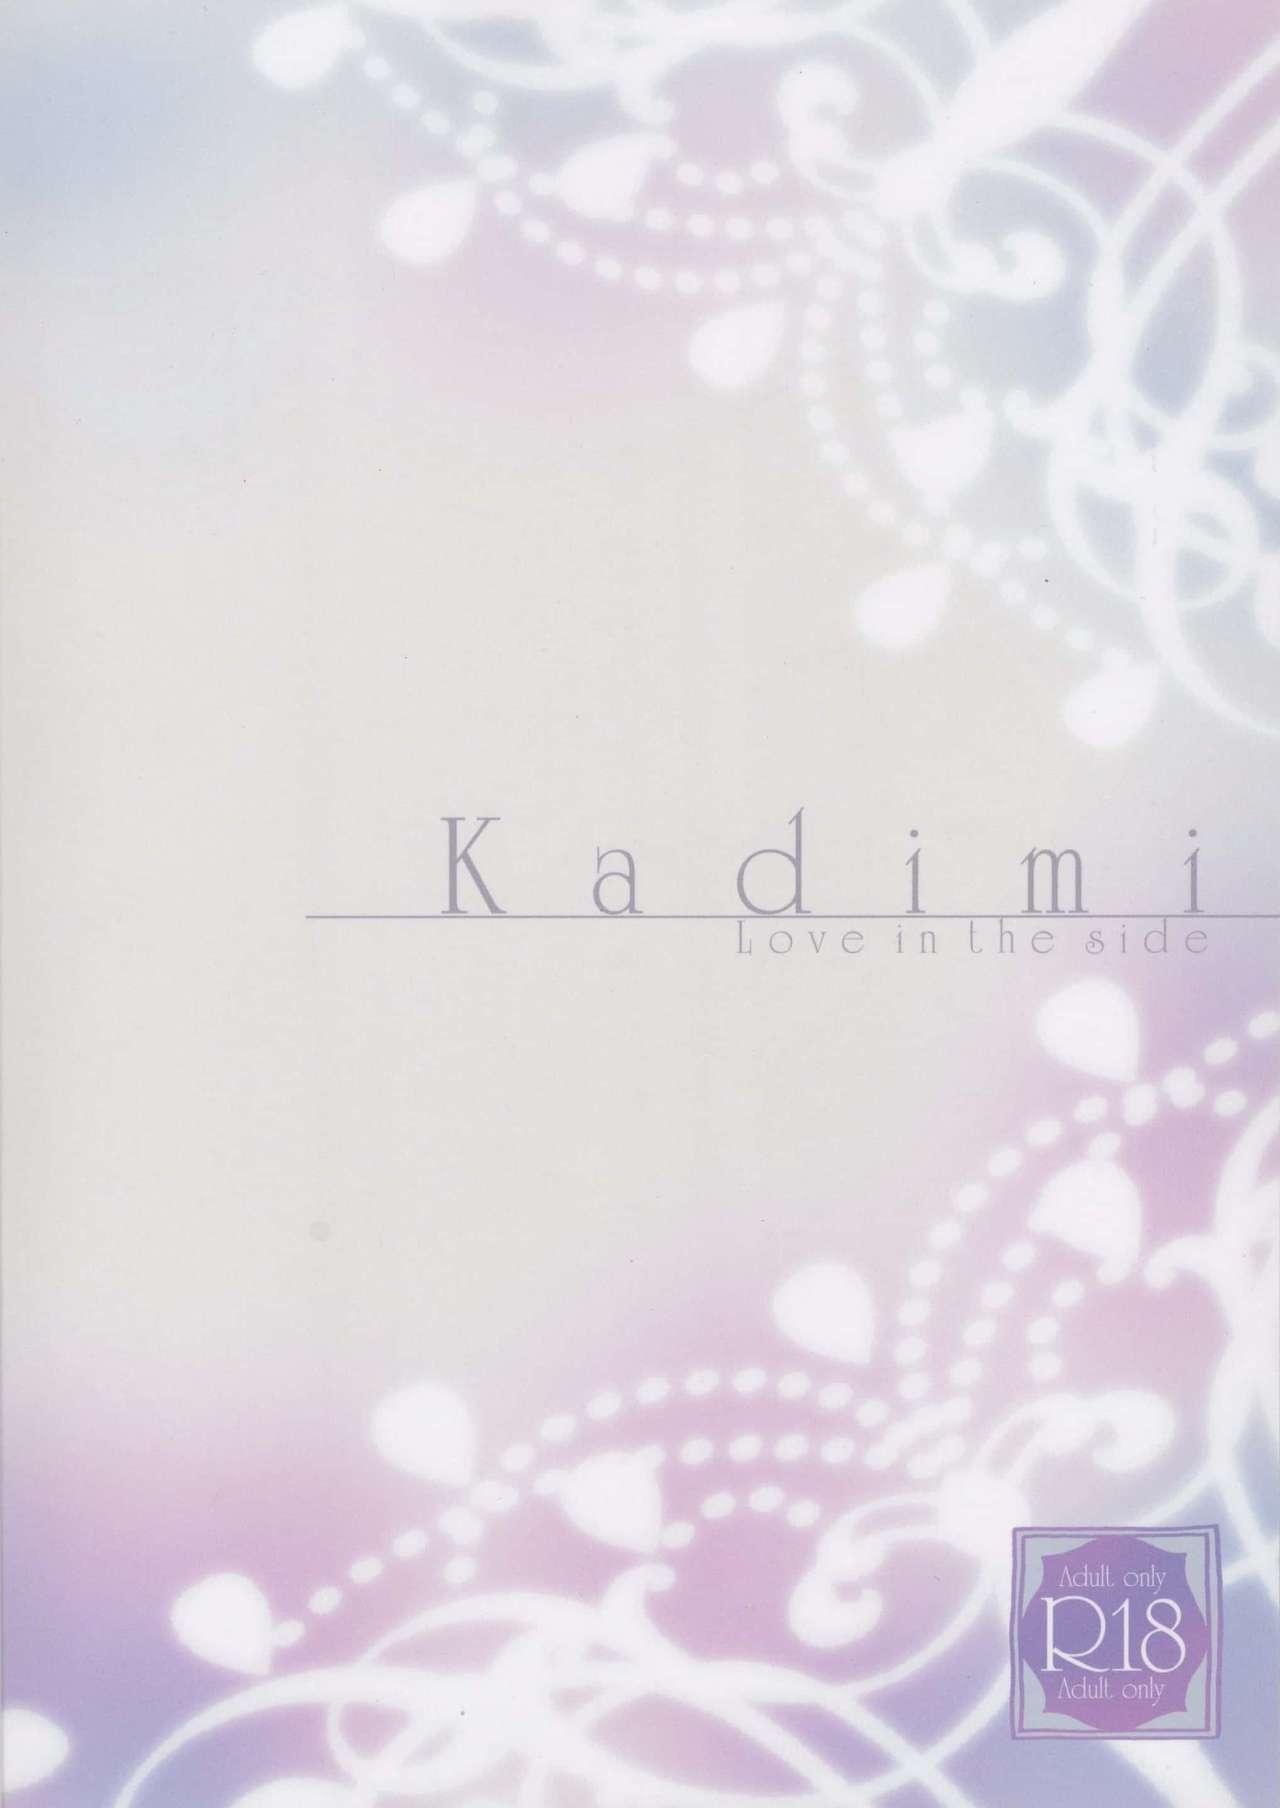 Kadimi Love in the side 1